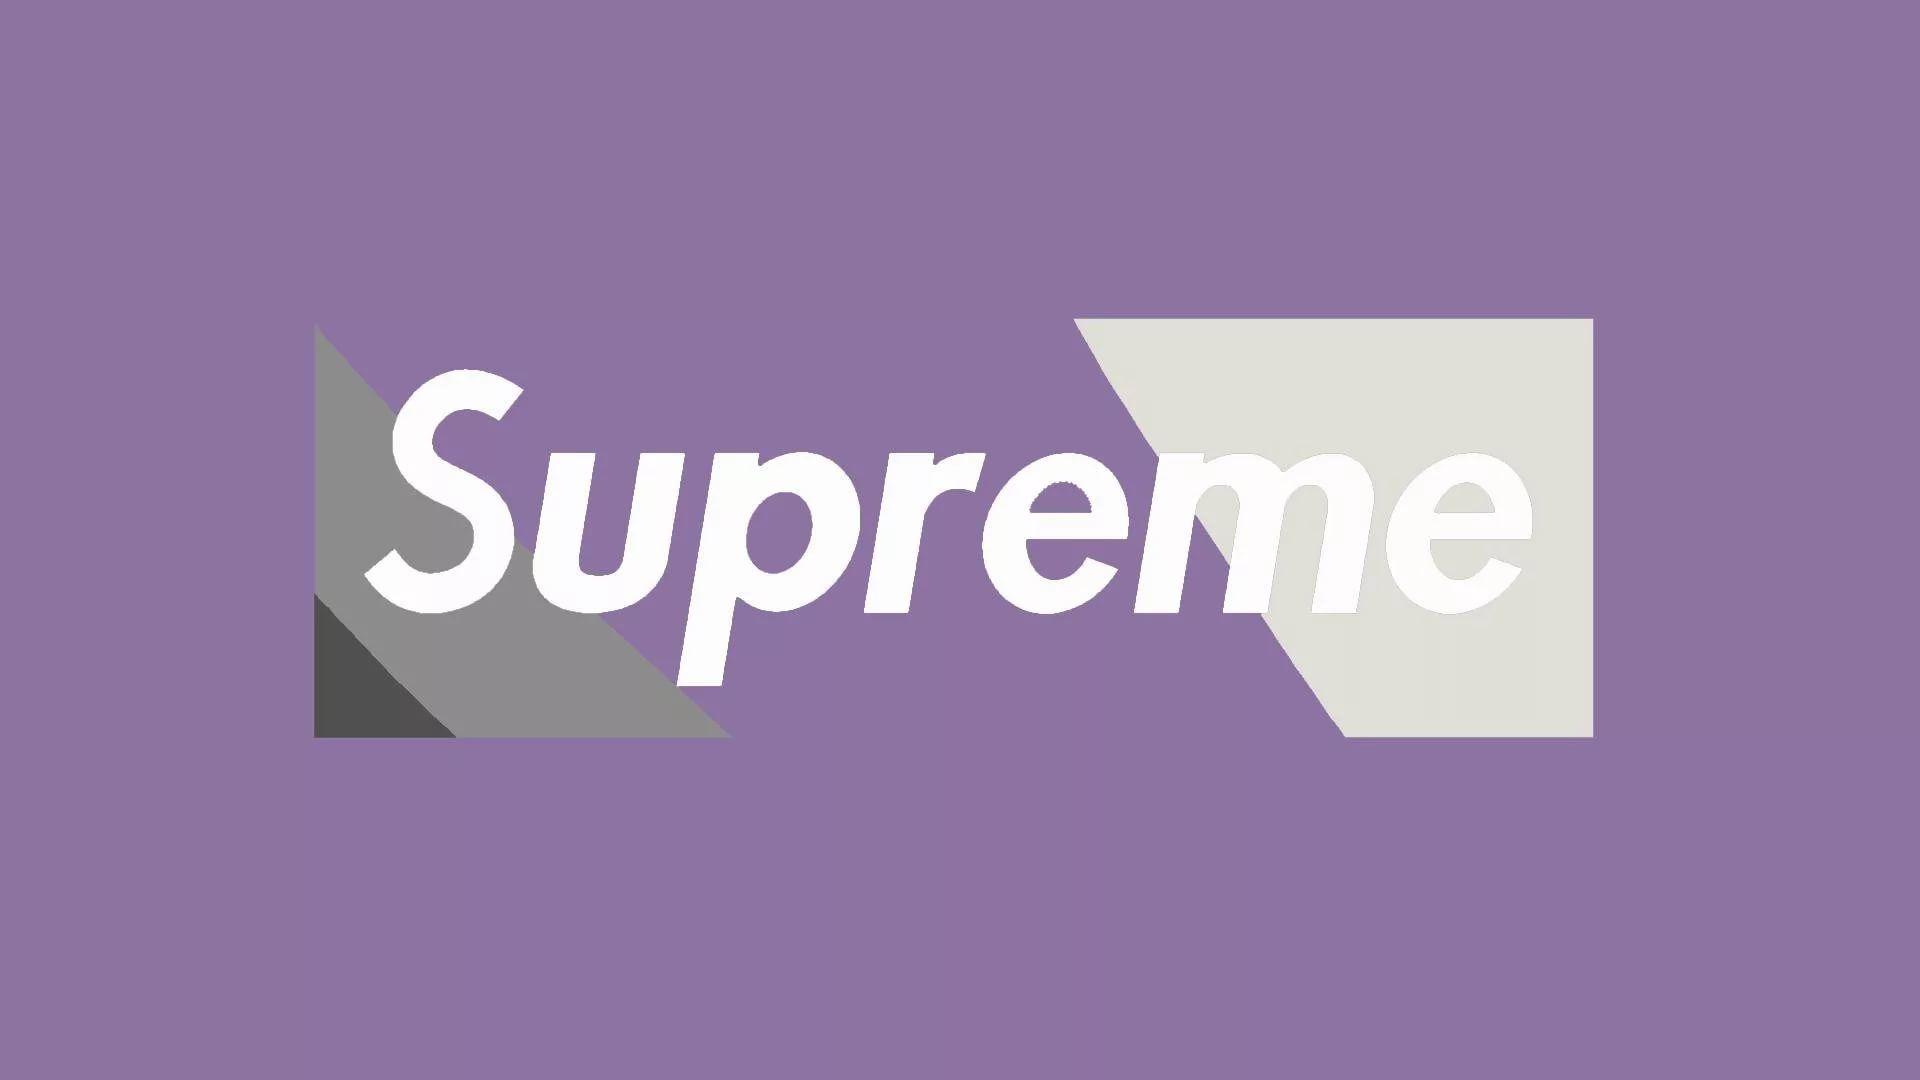 Supreme Purple Box Logo Wallpaper